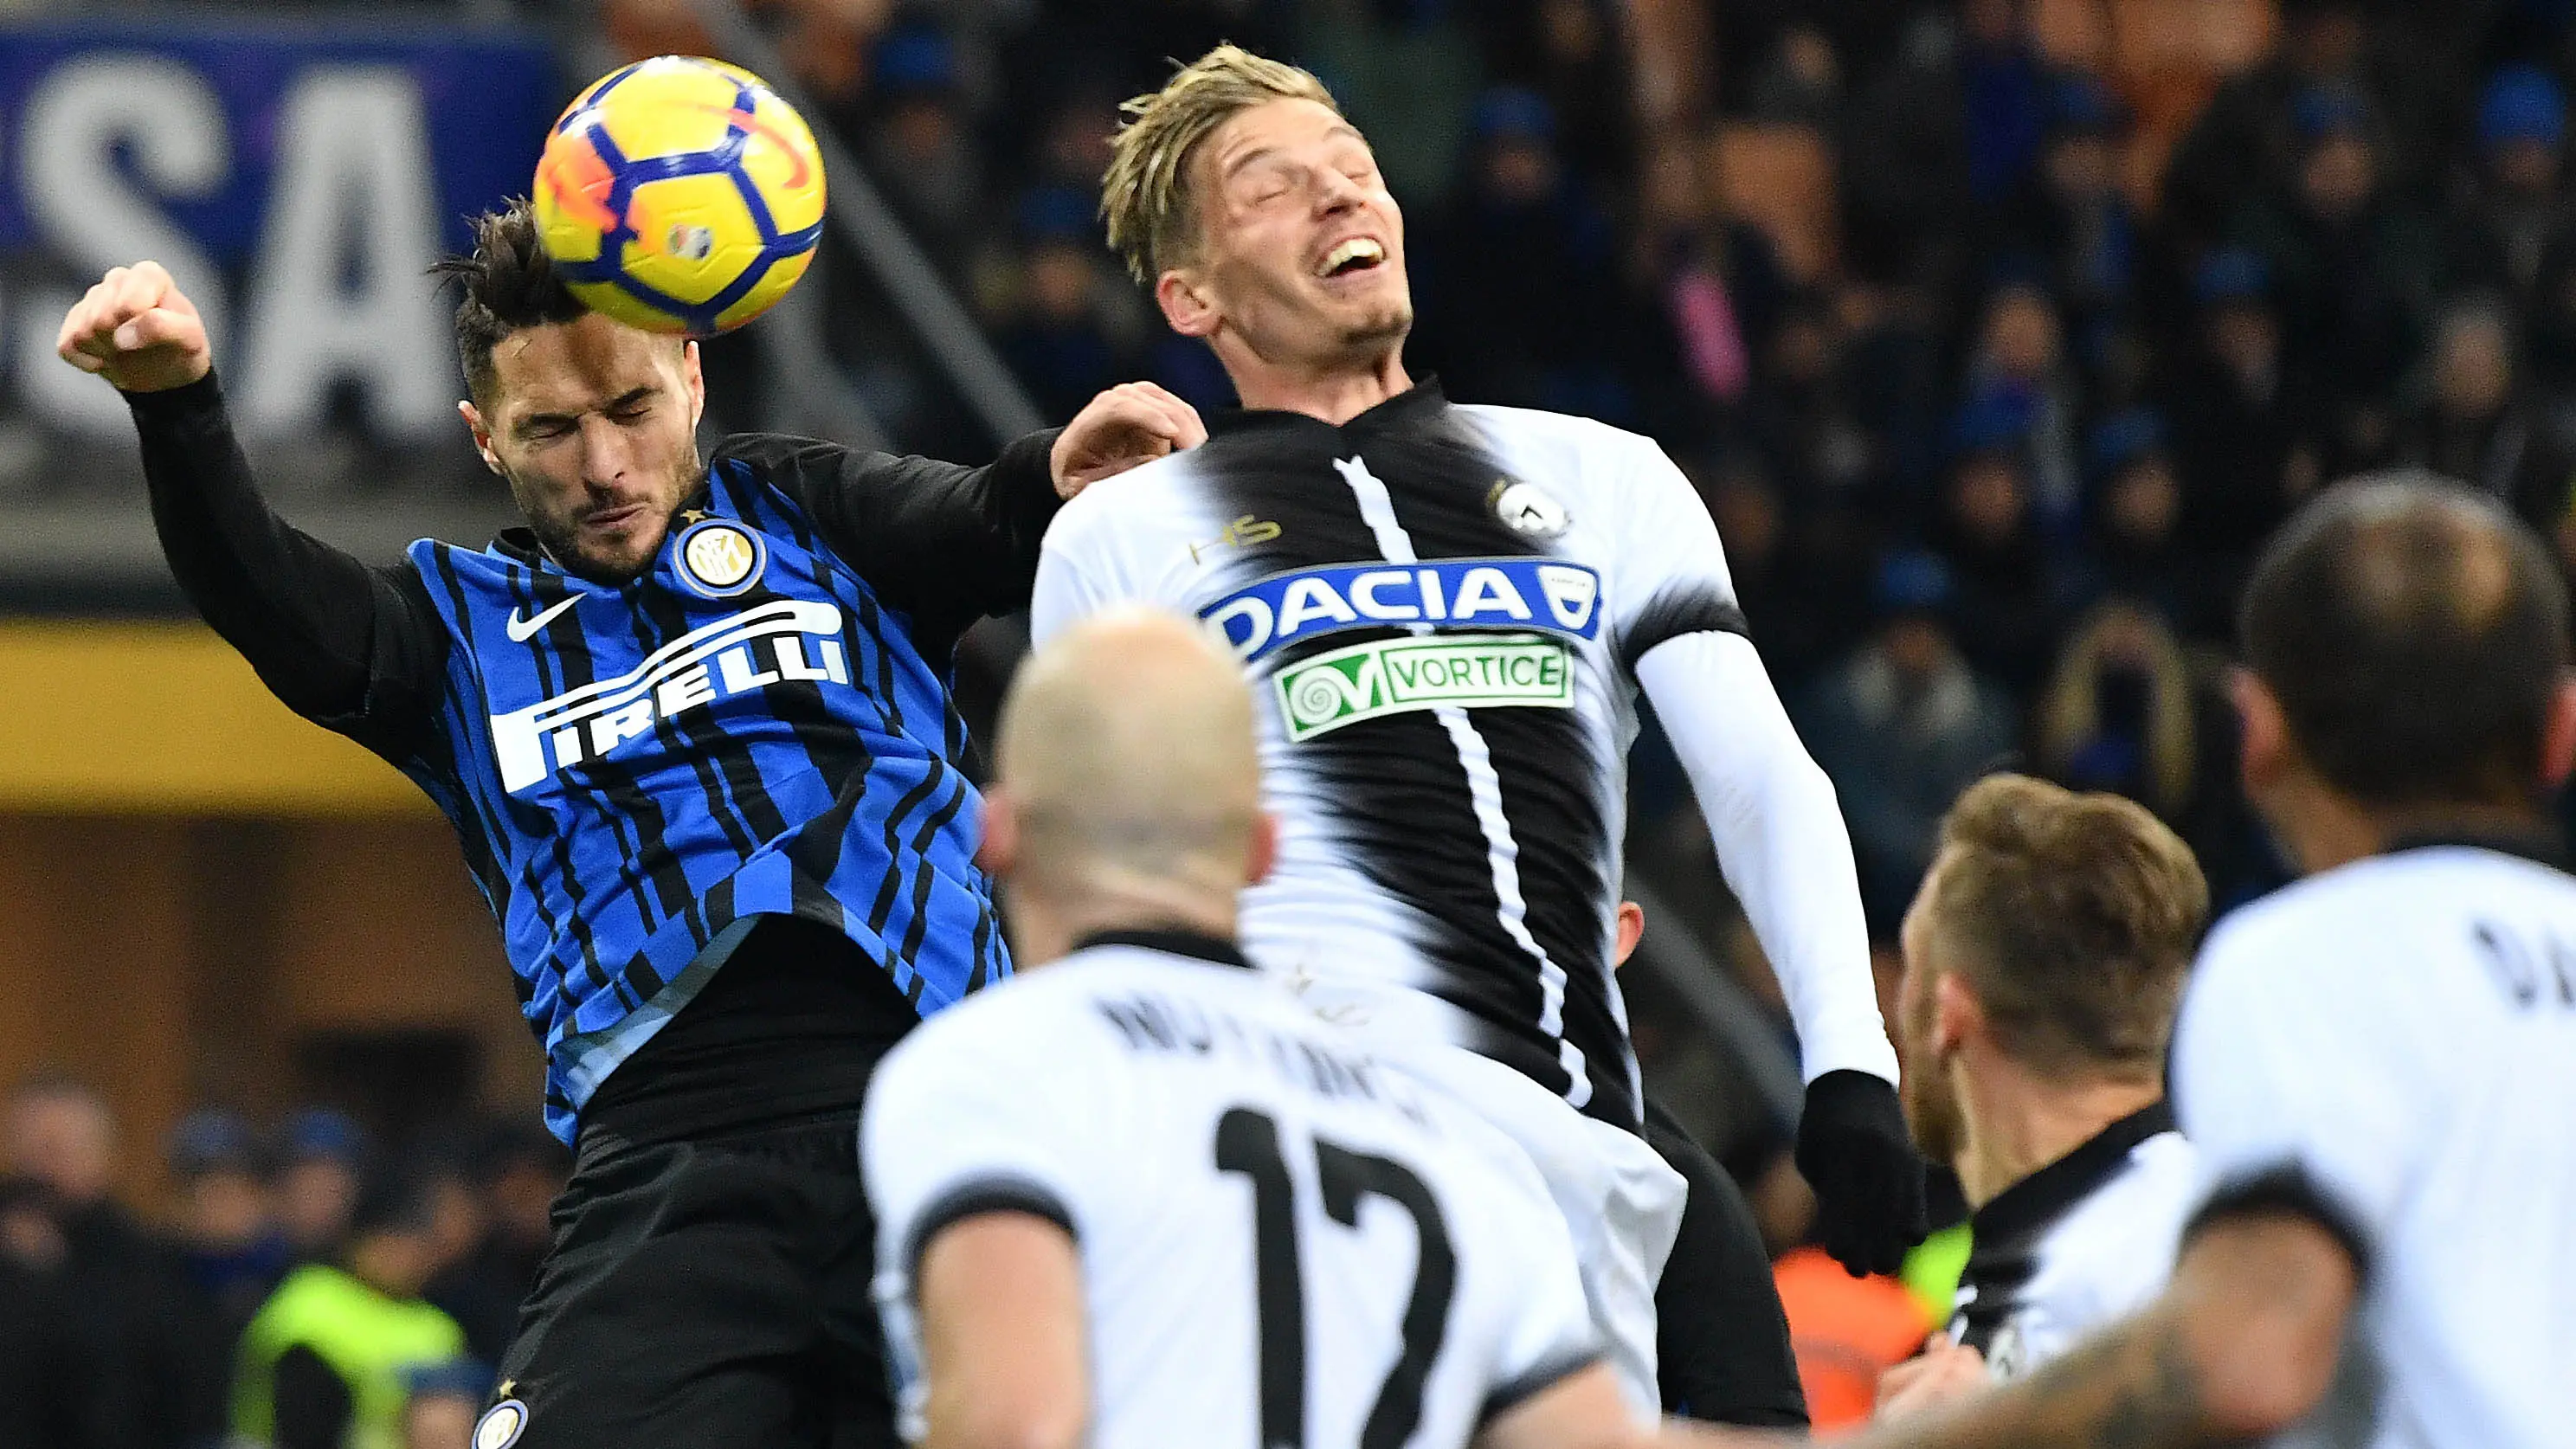 Bek Inter Milan, Danilo D'Ambrosio, duel udara dengan bek Udinese, Jens Stryger, pada laga Serie A di Stadion Giuseppe Meazza, Milan, Sabtu (16/12/2017). Inter Milan takluk 1-3 dari Udinese. (AFP/Alberto Pizzoli)